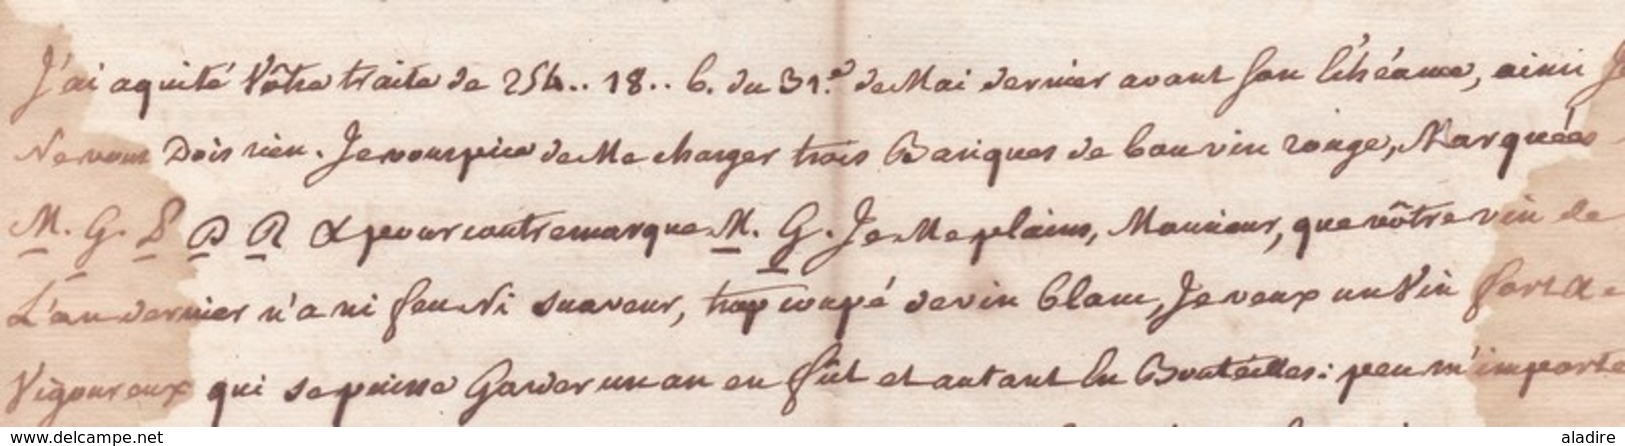 1770 - Marque postale St BRIEUC, auj. Côtes d' Armor sur LAC vers Bordeaux, Gironde - taxe 14